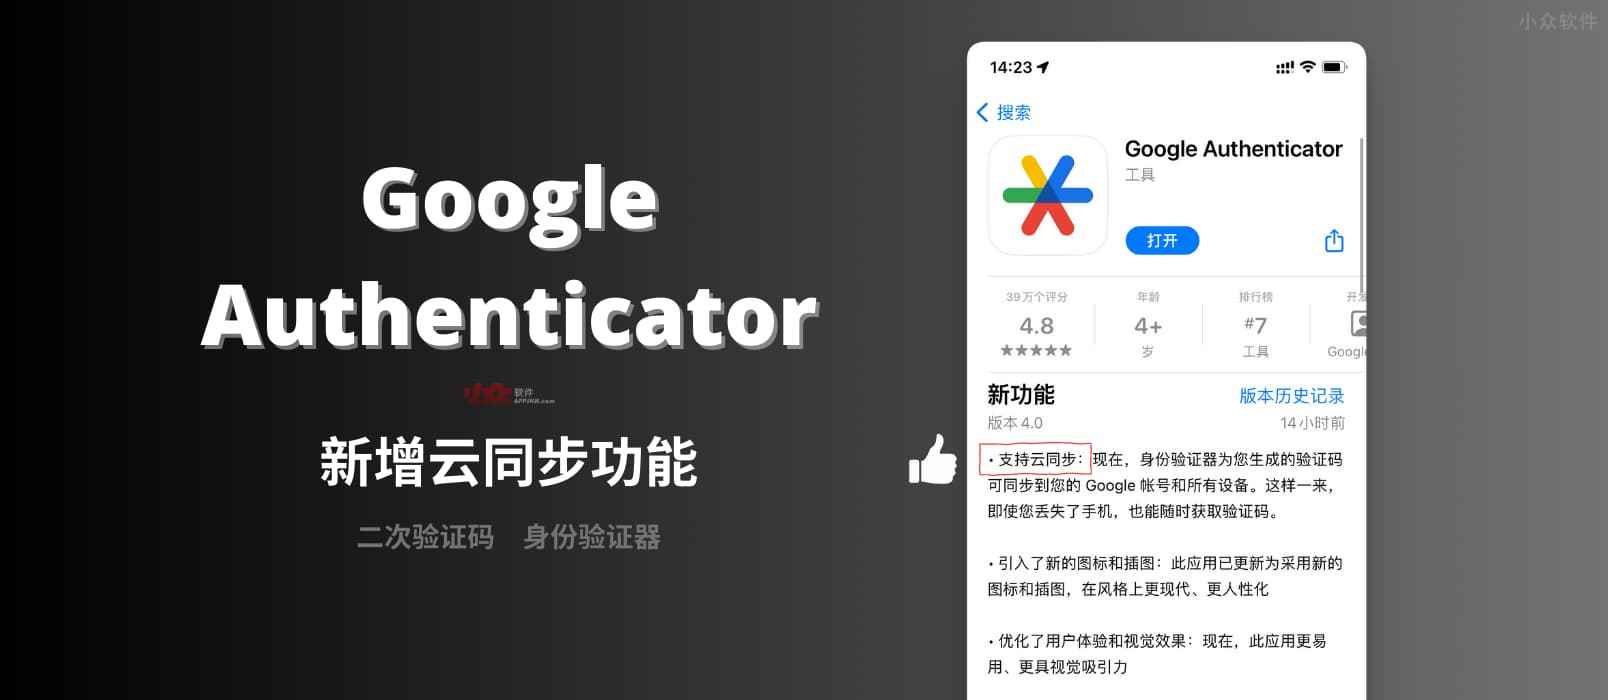 Google Authenticator 新版本发布，支持启用云同步，数据将保存在 Google 账号中。